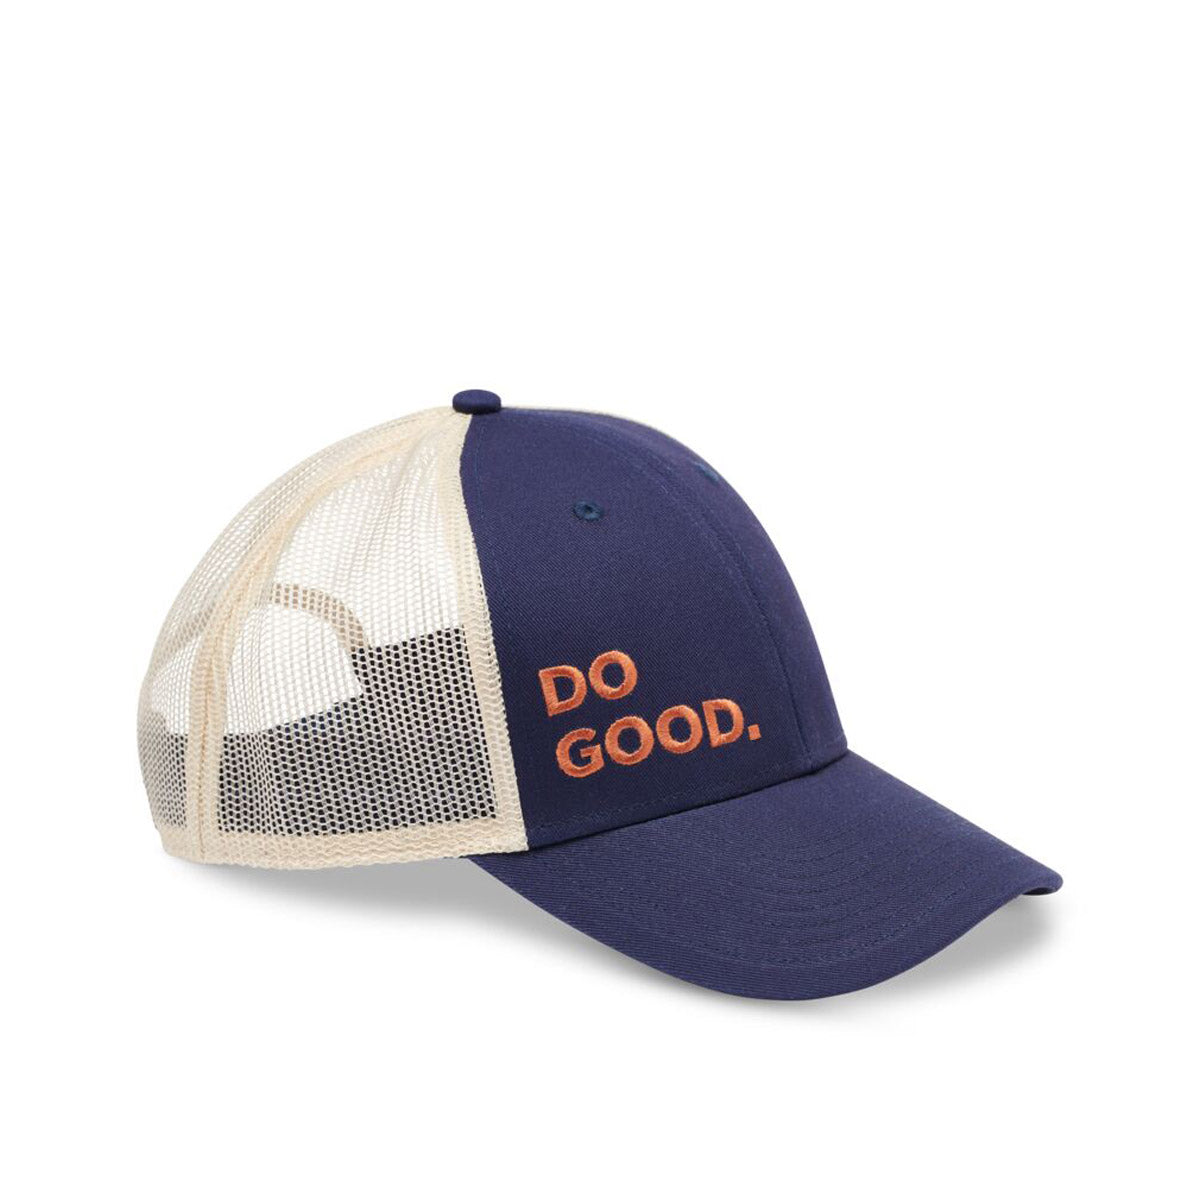 Do Good Trucker Hat